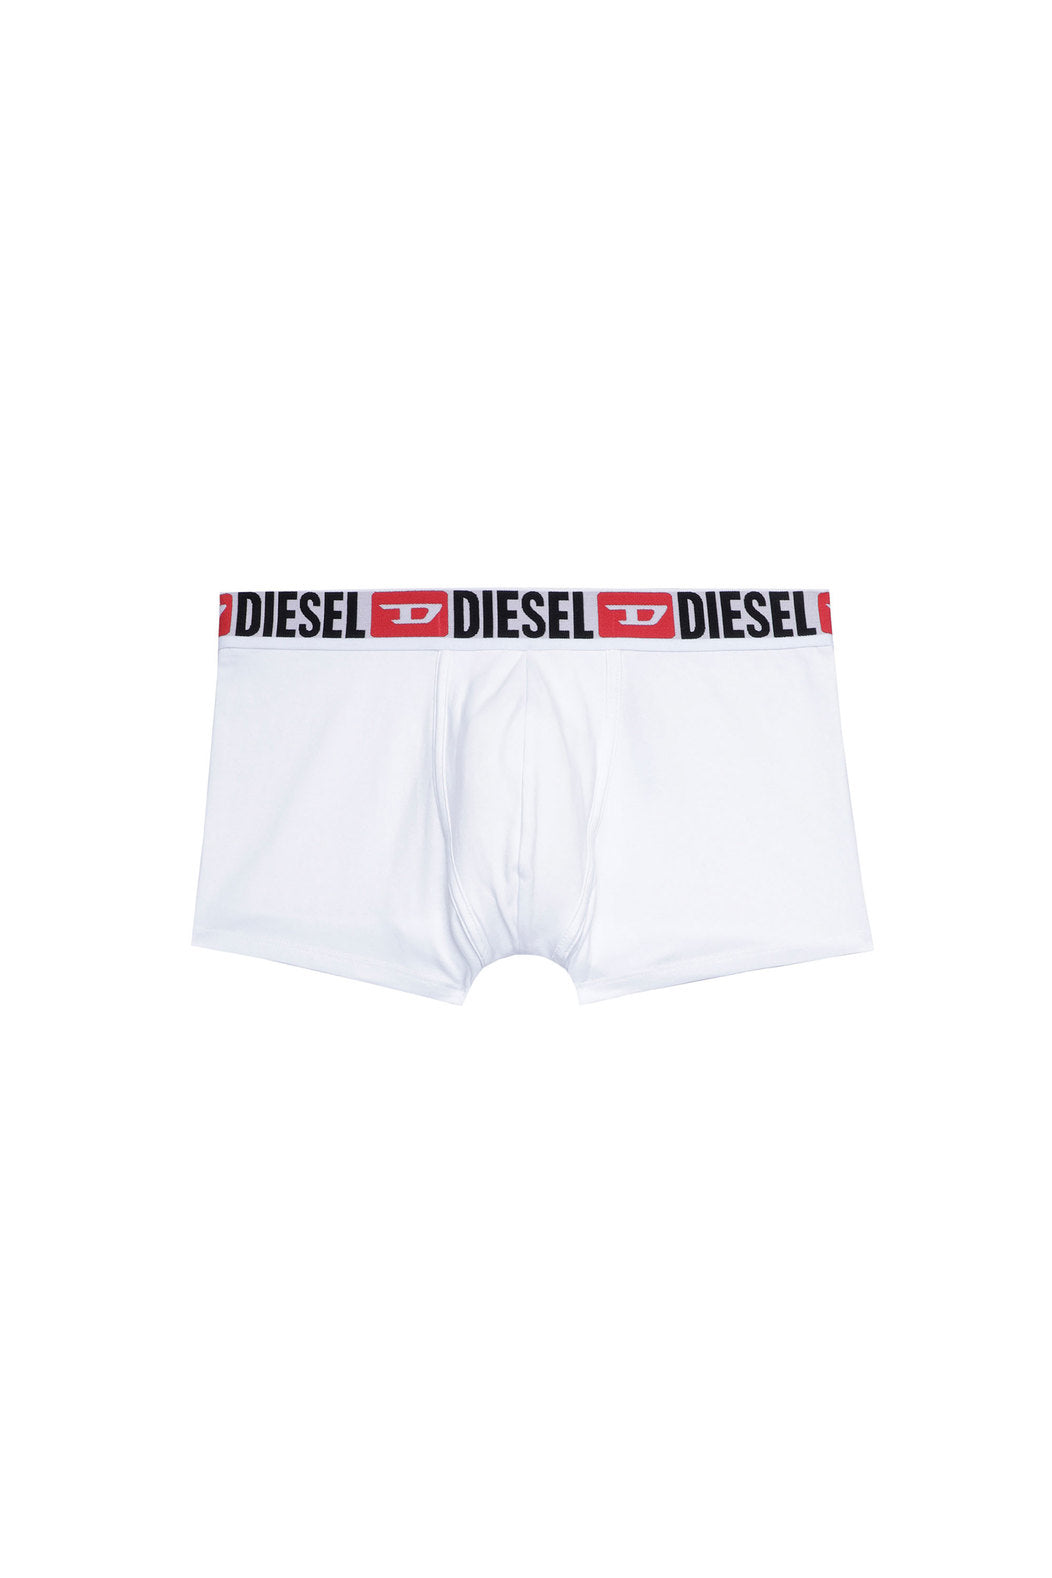 Diesel Damien Three Pack Underwear | Classics